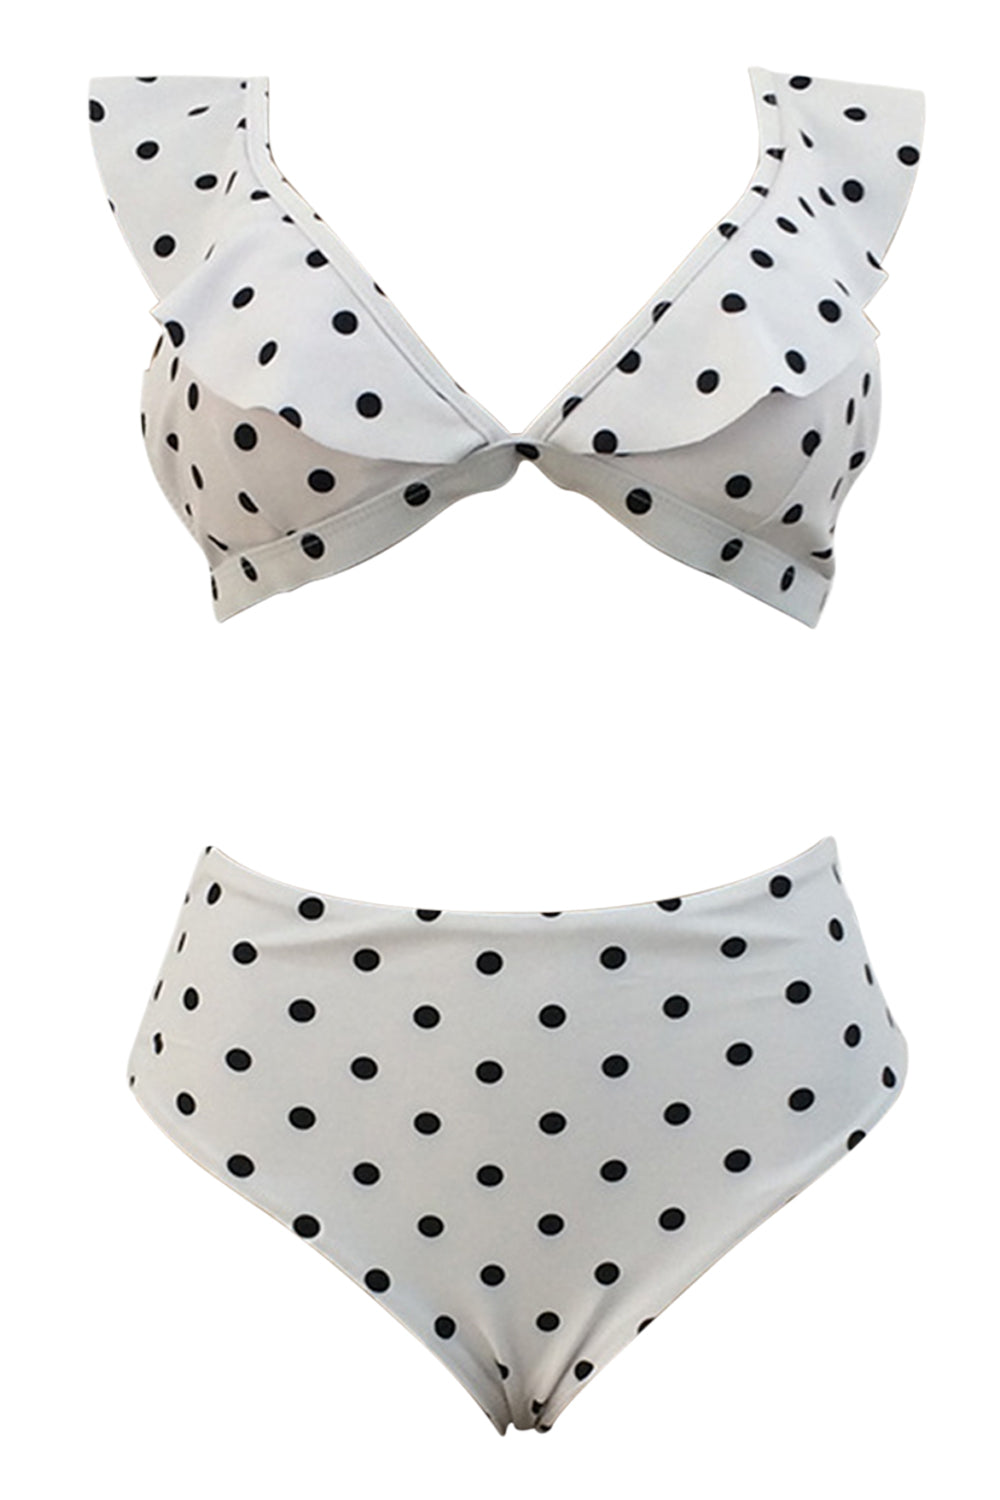 Iyasson Polka dot Printing Falbala Bikini Sets